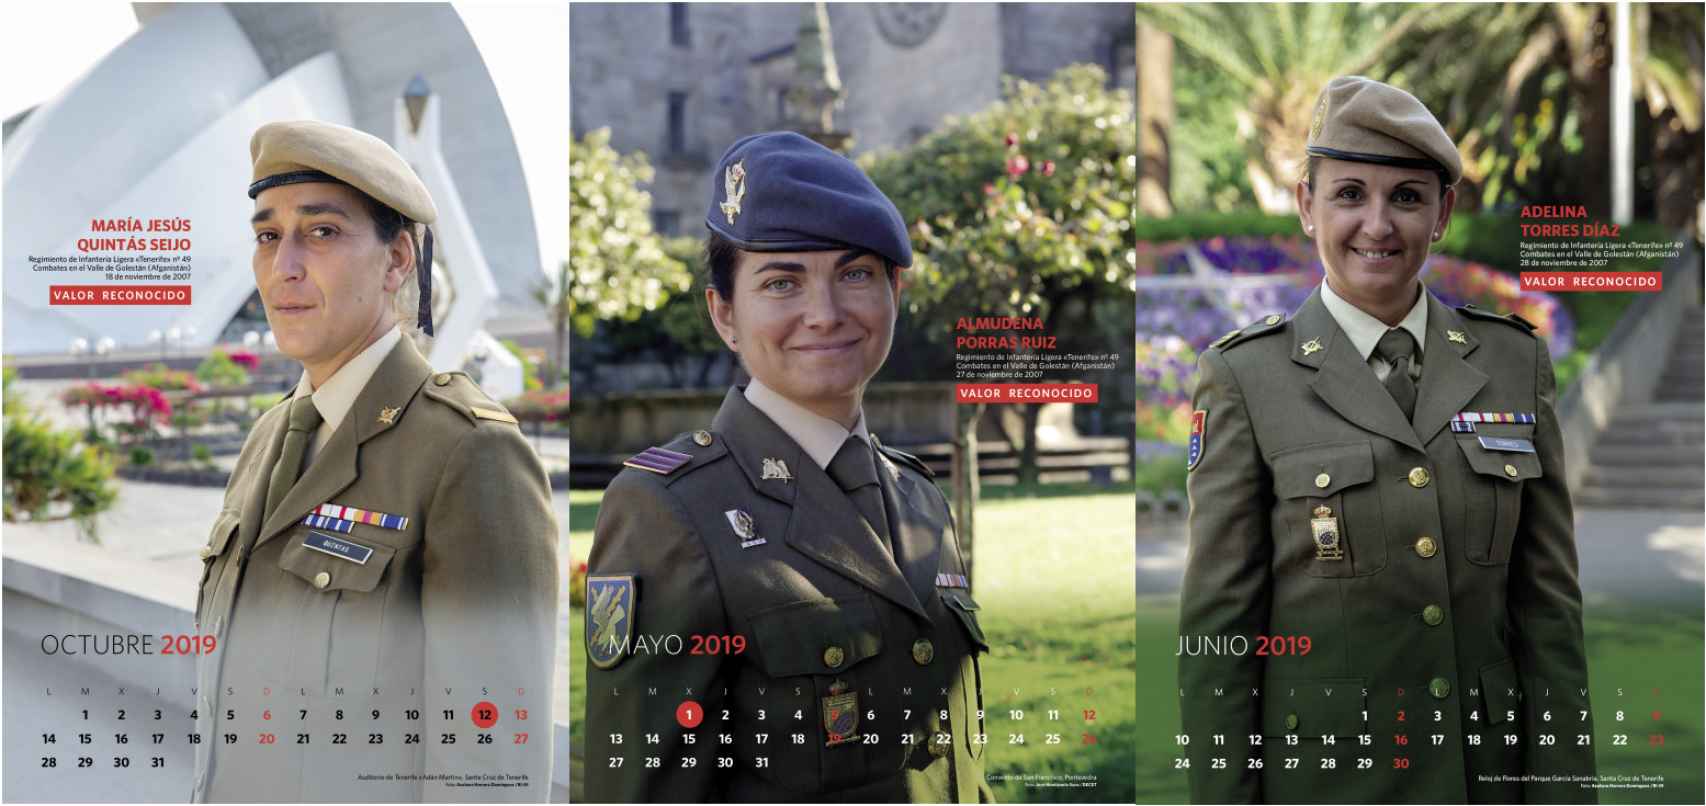 Almudena Porras, María José Quintas y Adelina Torres, en la imagen del calendario del Ejército de Tierra.